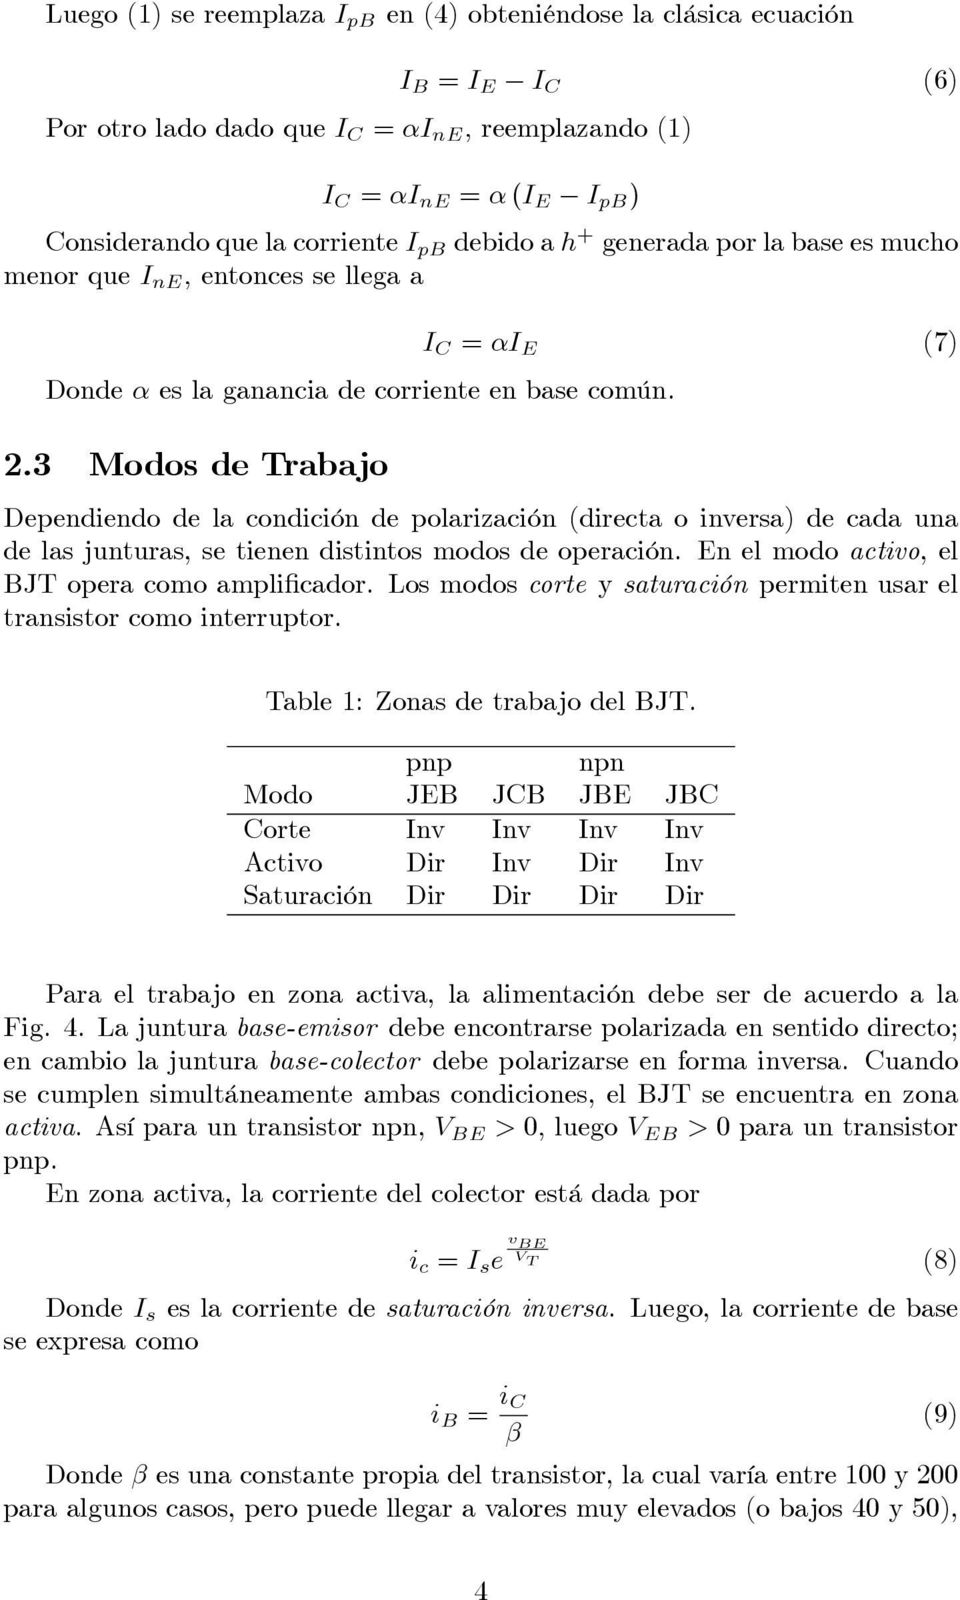 3 Modos de Trabajo I = I (7) Deediedo de la codició de olarizació (directa o iversa) de cada ua de las juturas, se tiee distitos modos de oeració. el modo activo, el JT oera como amli cador.